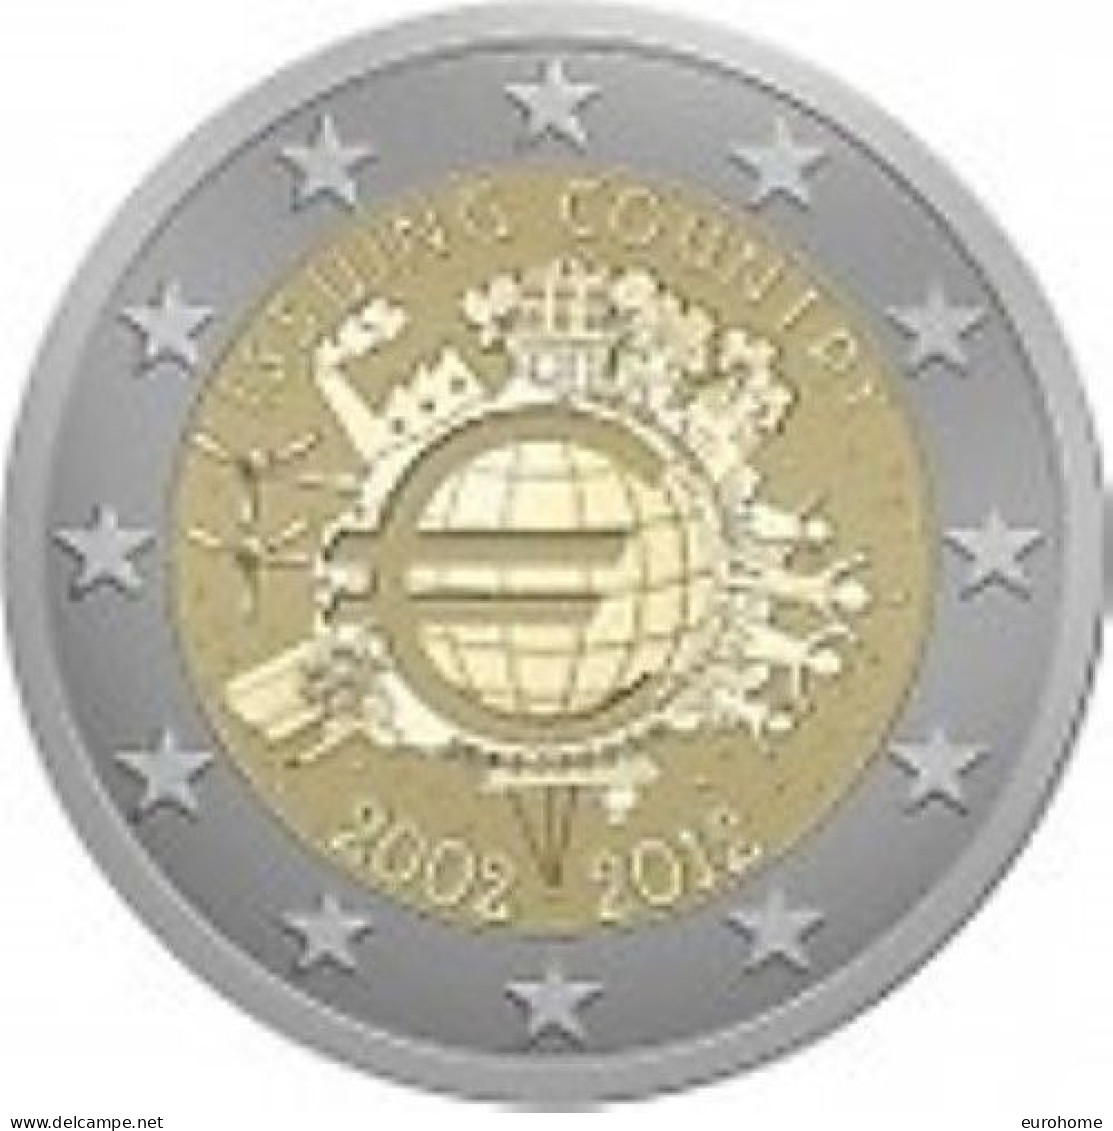 Ierland 2012    2 Euro Commemo   10 Jaar Euro      UNC Uit De Rol  UNC Du Rouleaux  !! - Slovenië